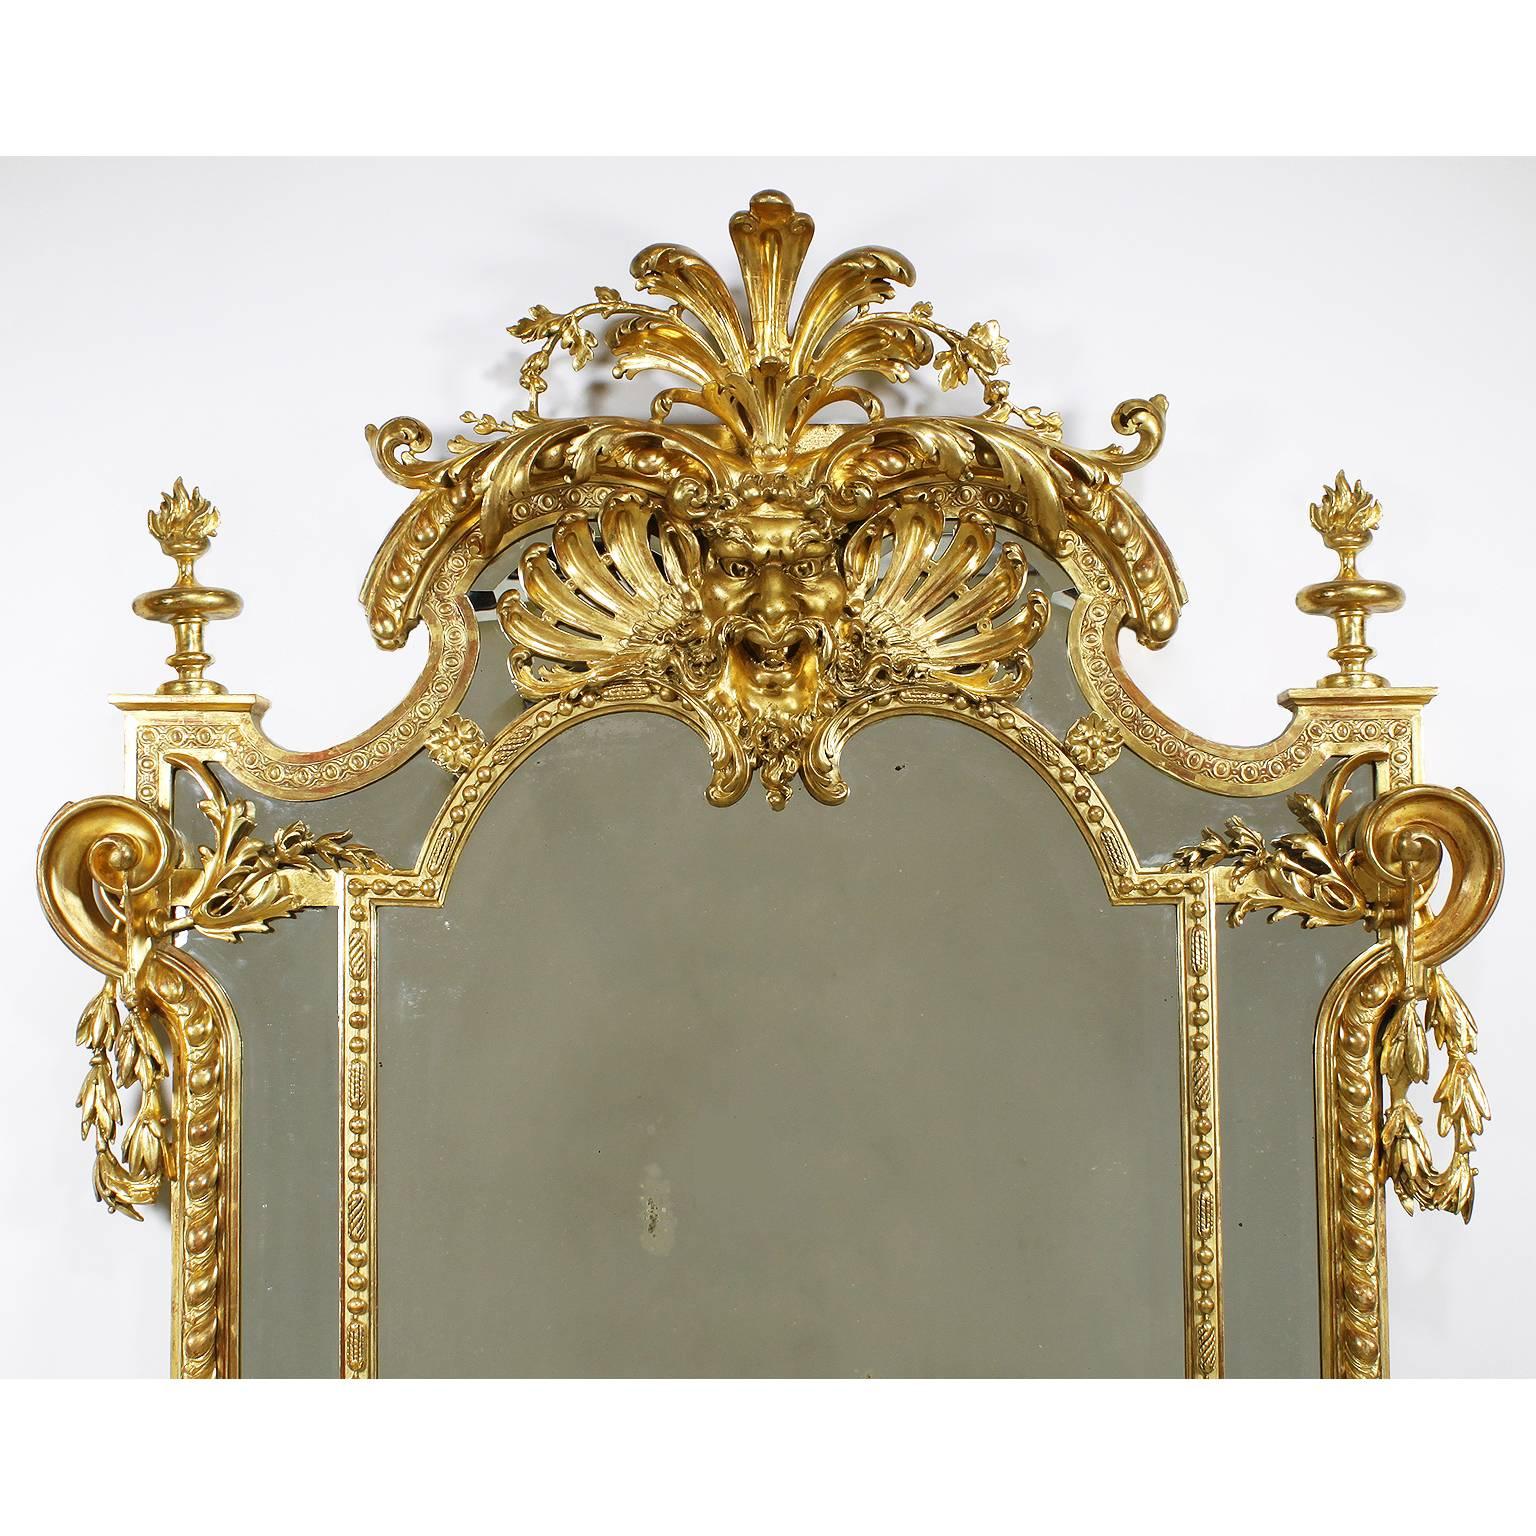 Très beau cadre de miroir figuratif en bois doré et gesso sculpté de style Empire français du XIXe siècle, flanqué d'une paire de sphinx ailés assis, avec des rinceaux sculptés, des guirlandes et couronné d'un masque de satyre sculpté et percé avec